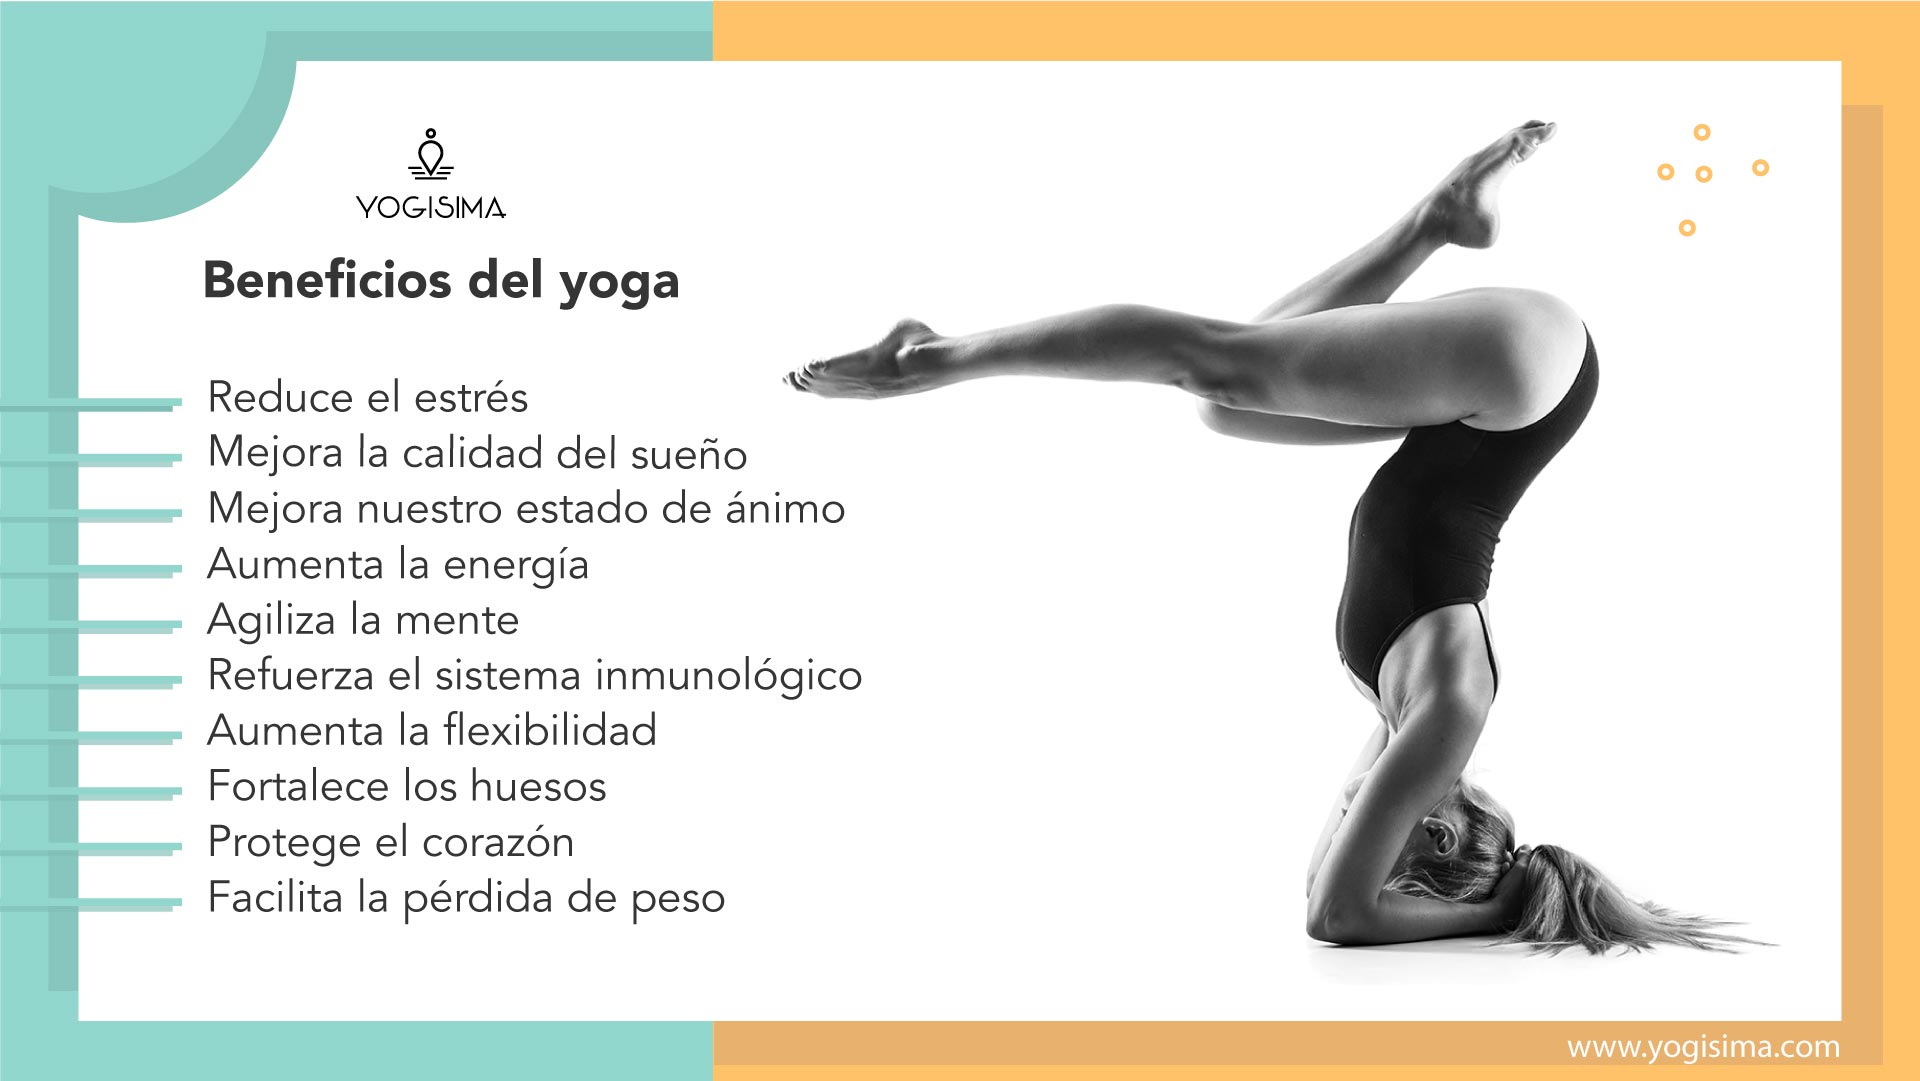 Productos y accesorios para yoga y diversas disciplinas de bienestar, 2019.